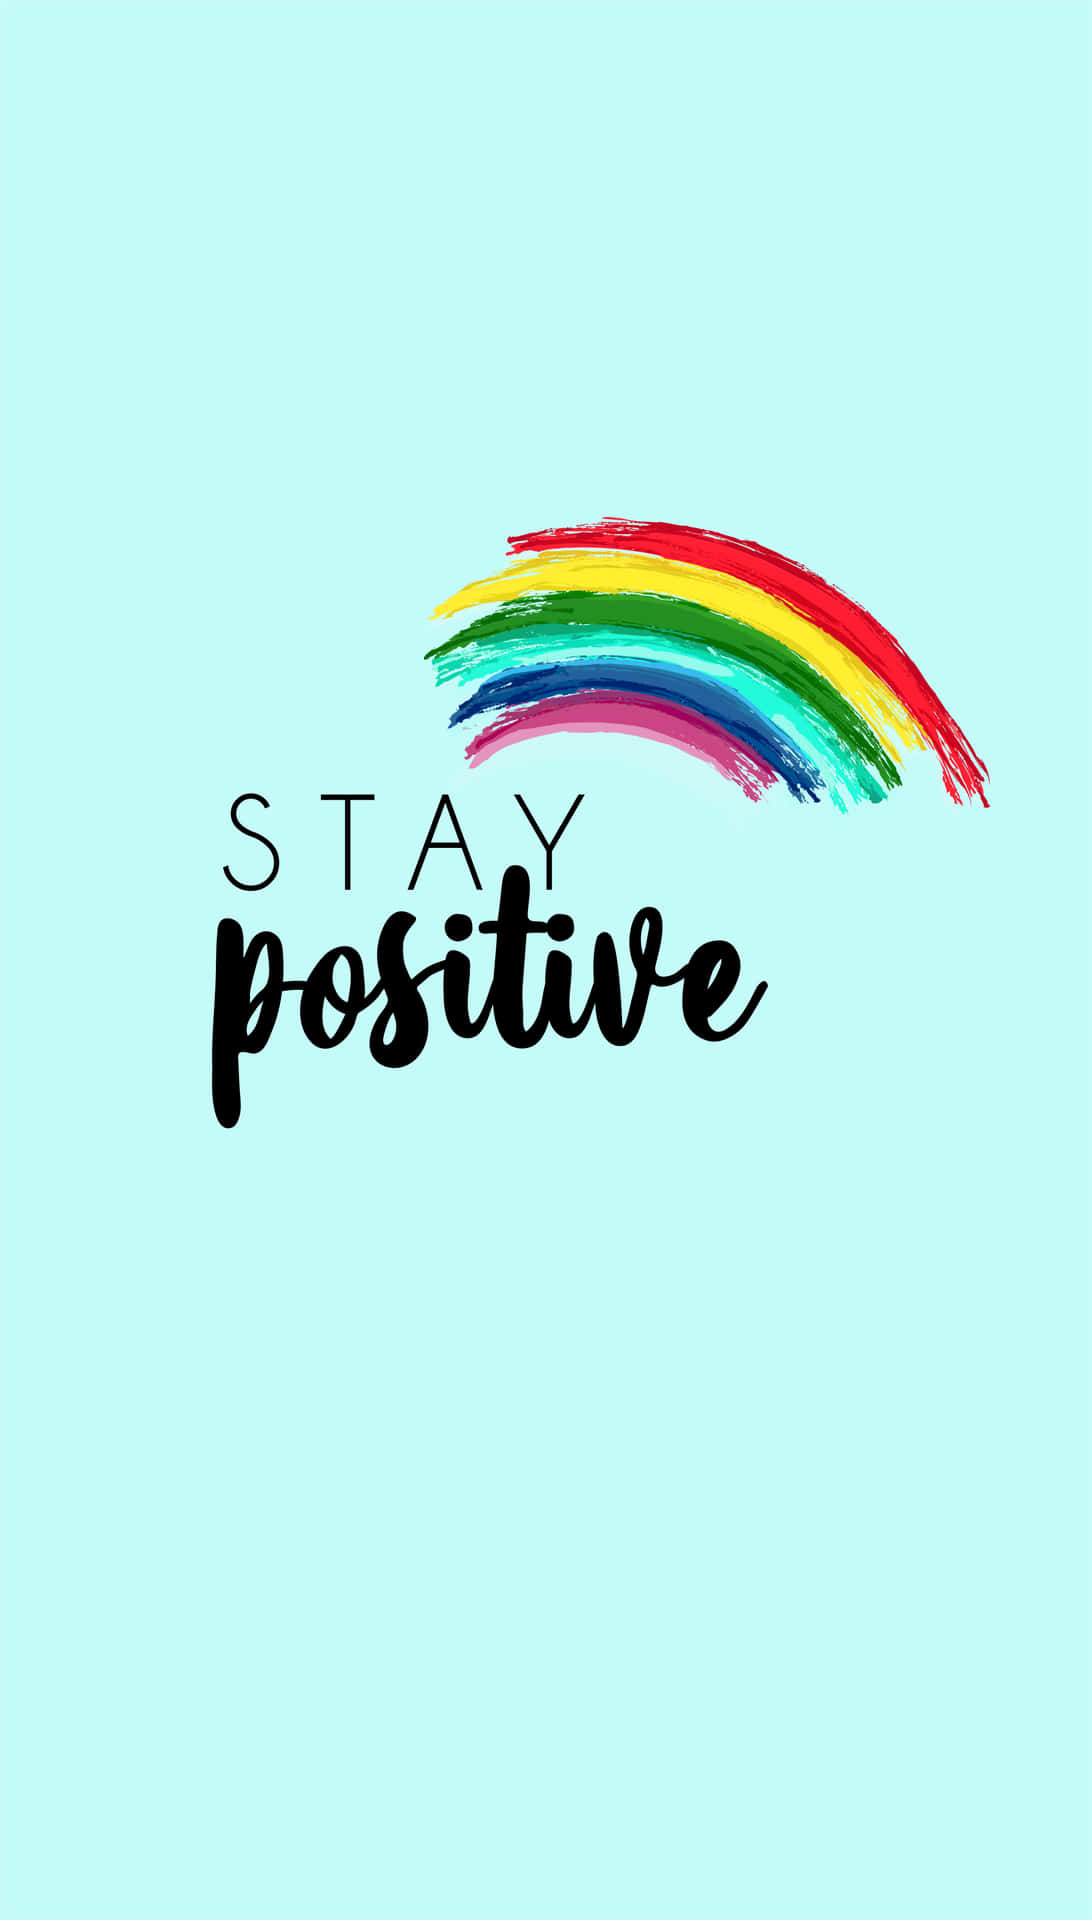 Hình nền Stay Positive là lựa chọn tuyệt vời cho bạn khi đang cần một chút khích lệ. Với những hình ảnh đẹp mắt và thông điệp đầy tích cực, bạn sẽ được tràn đầy năng lượng và giải tỏa stress. Hầu hết các hình nền Stay Positive đều miễn phí, do đó bạn có thể tải chúng xuống và sử dụng ngay hôm nay.